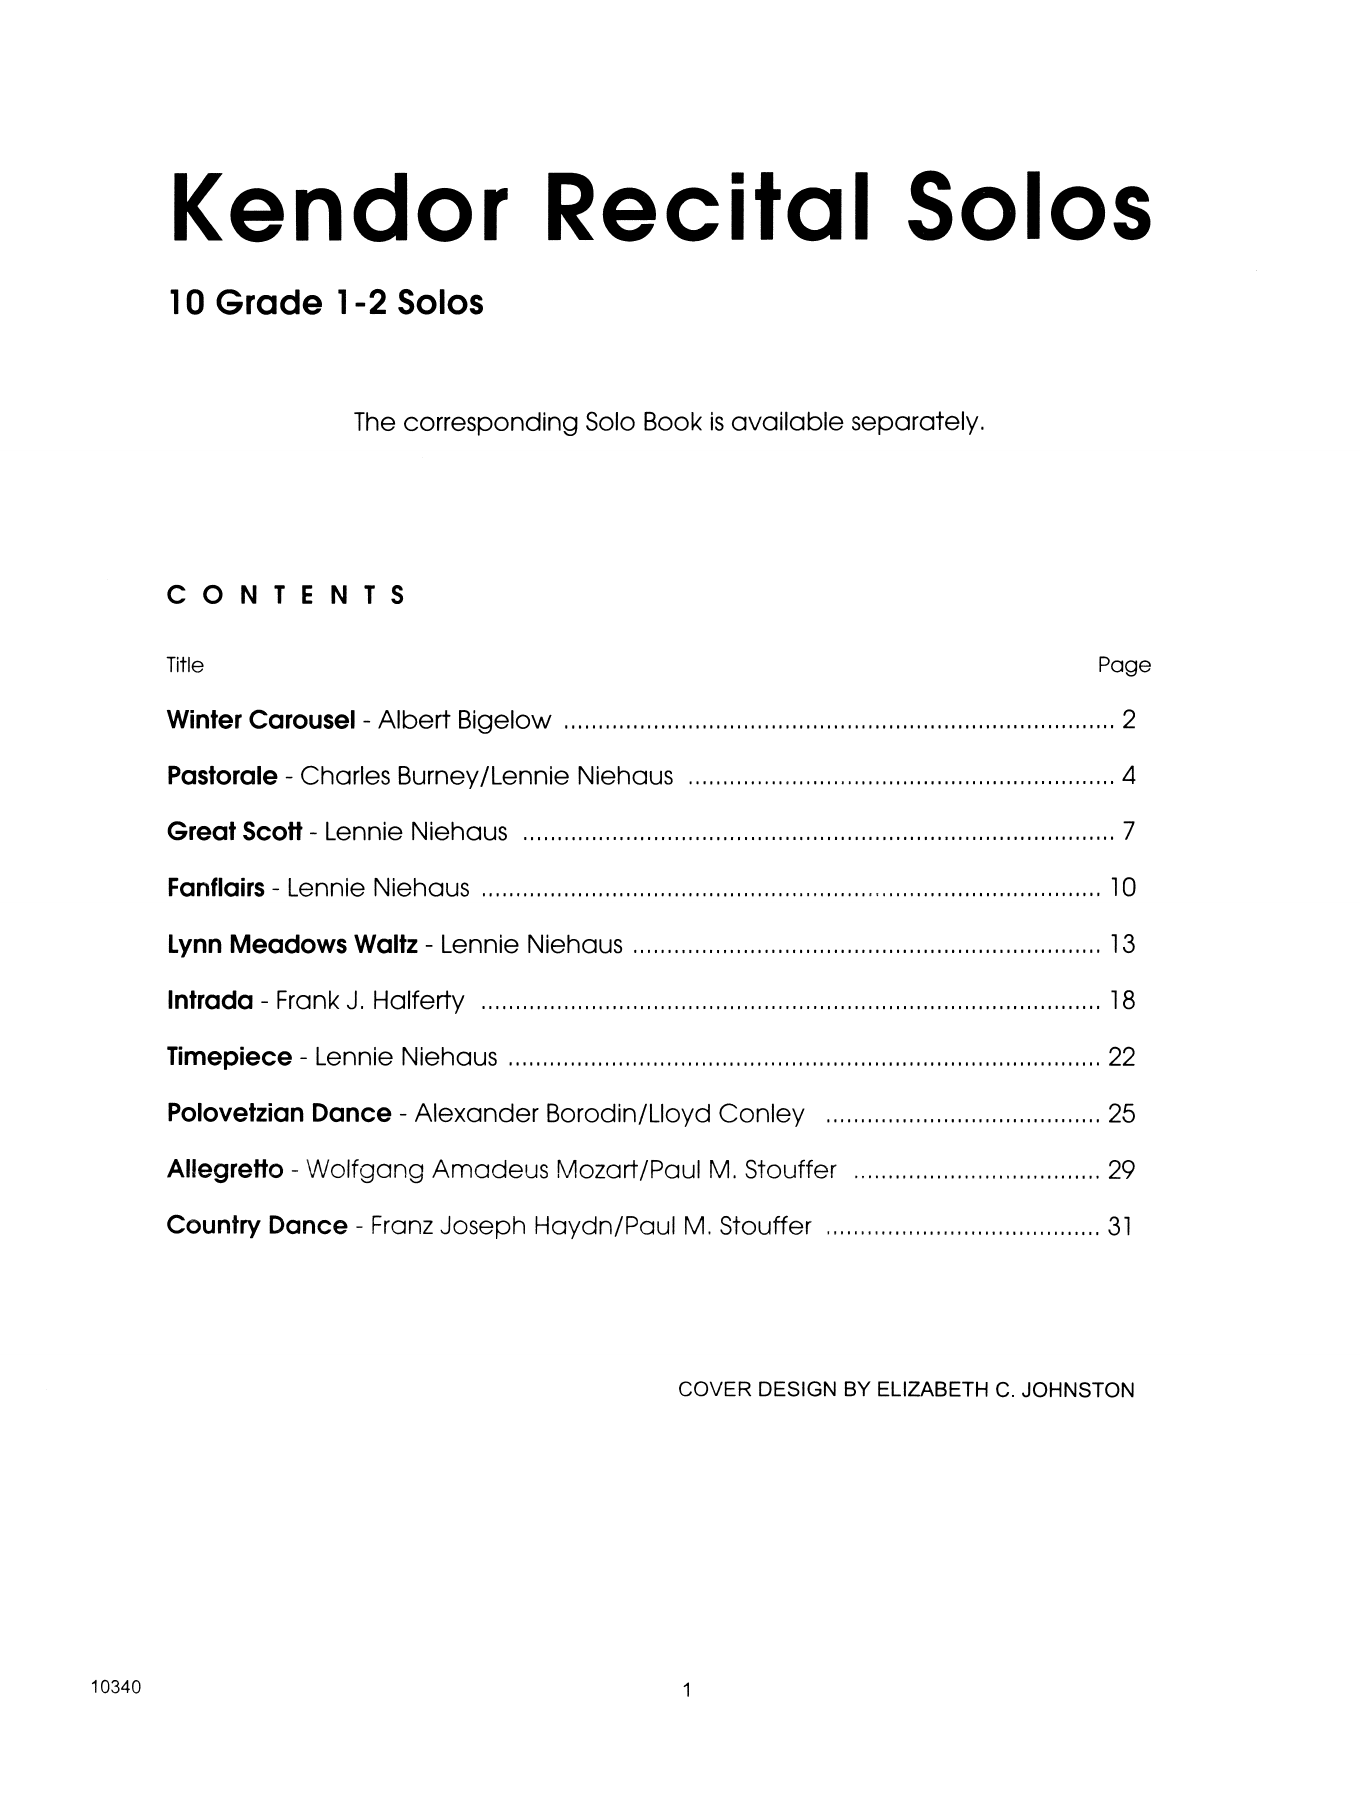 Download Various Kendor Recital Solos - Trumpet - Piano Sheet Music